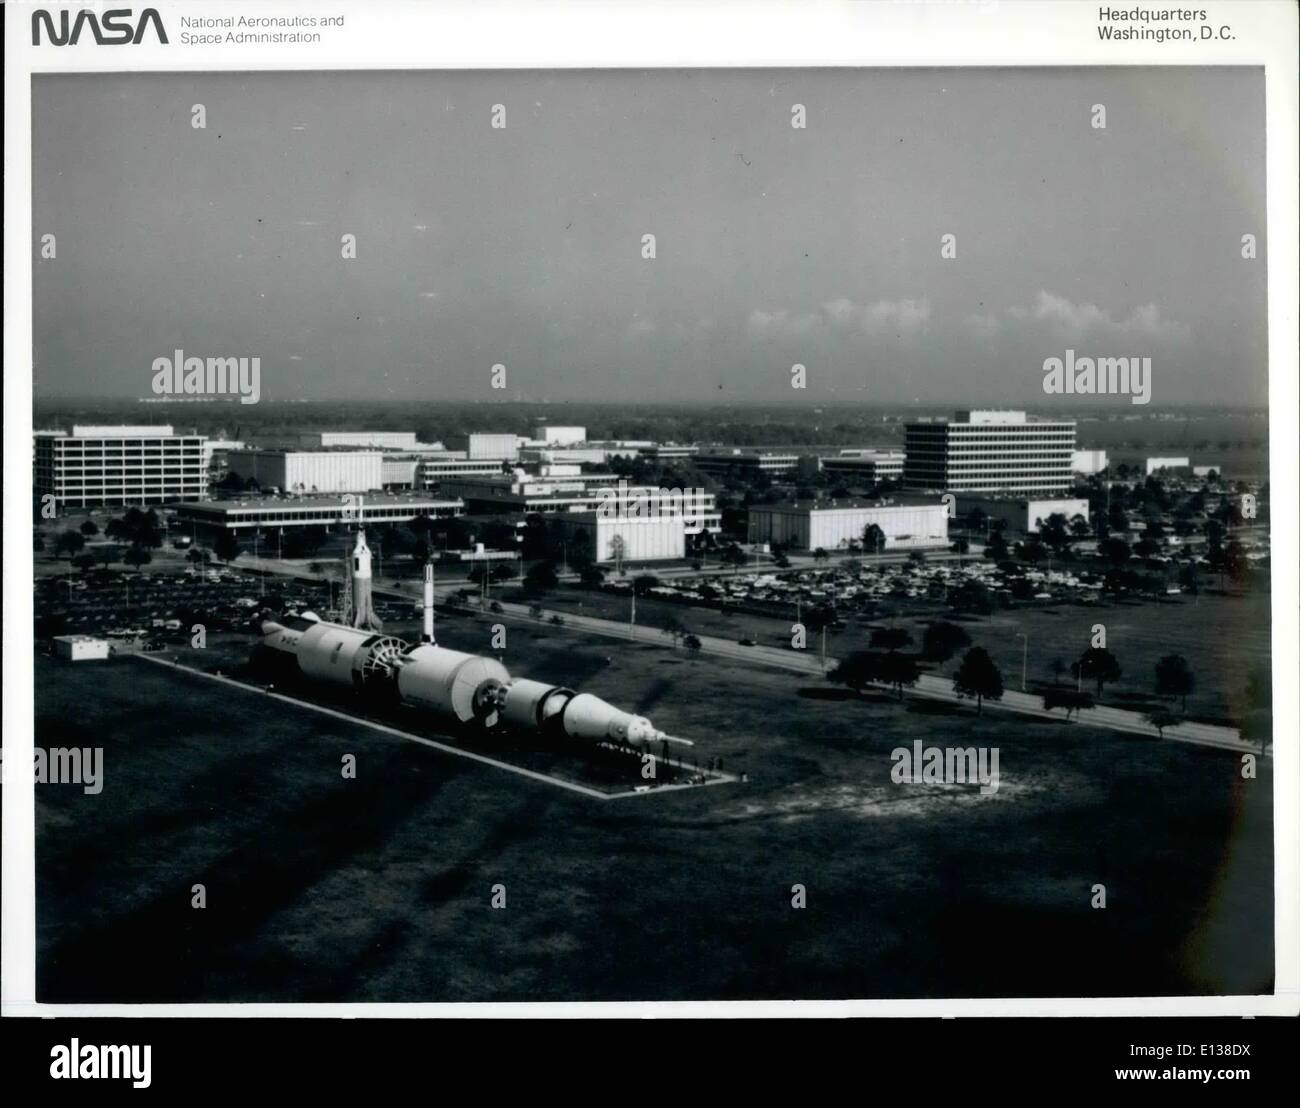 29. Februar 2012 - JOHNSON SPACE CENTER in HOUSTON, TEXAS. JSC Antenne Szene---dieser Nord - östliche Blick Blick auf das Johnson Space Center wurde im Dezember 1982 von einem Fotografen an Bord ein niedrig fliegenden NASA-Flugzeug gefangen genommen. Viele der Einrichtungen im zentralen Bereich des Houston ansässige Center der NASA ist erkennbar. Ein Saturn V starten Fahrzeug und Modelle von einer Mercury-Redstone-Rakete und eine Rakete, Little Joe gelten im Vordergrund. die fensterlose Anlage, zweite von links Mitte des Rahmens, über Gebäude ist die Mission Control centr Stockfoto